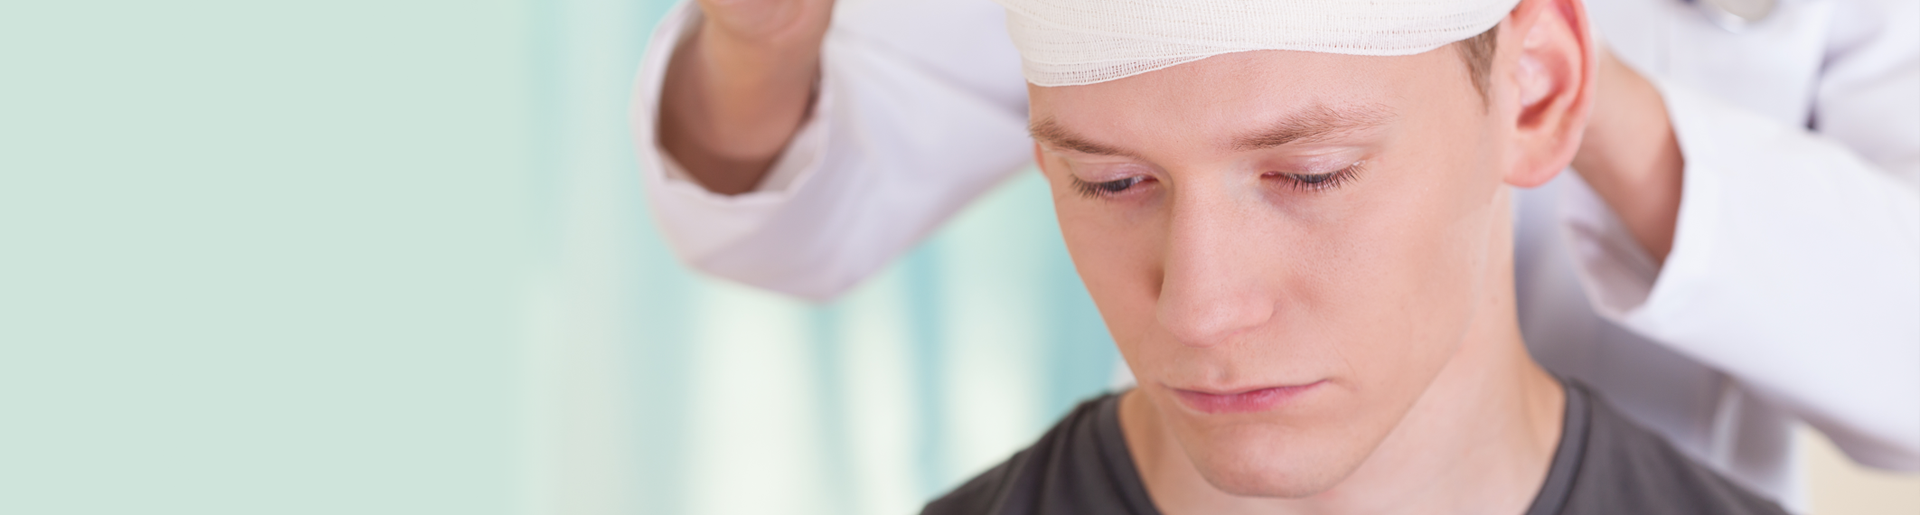 10 фактов о реабилитации после травмы головы